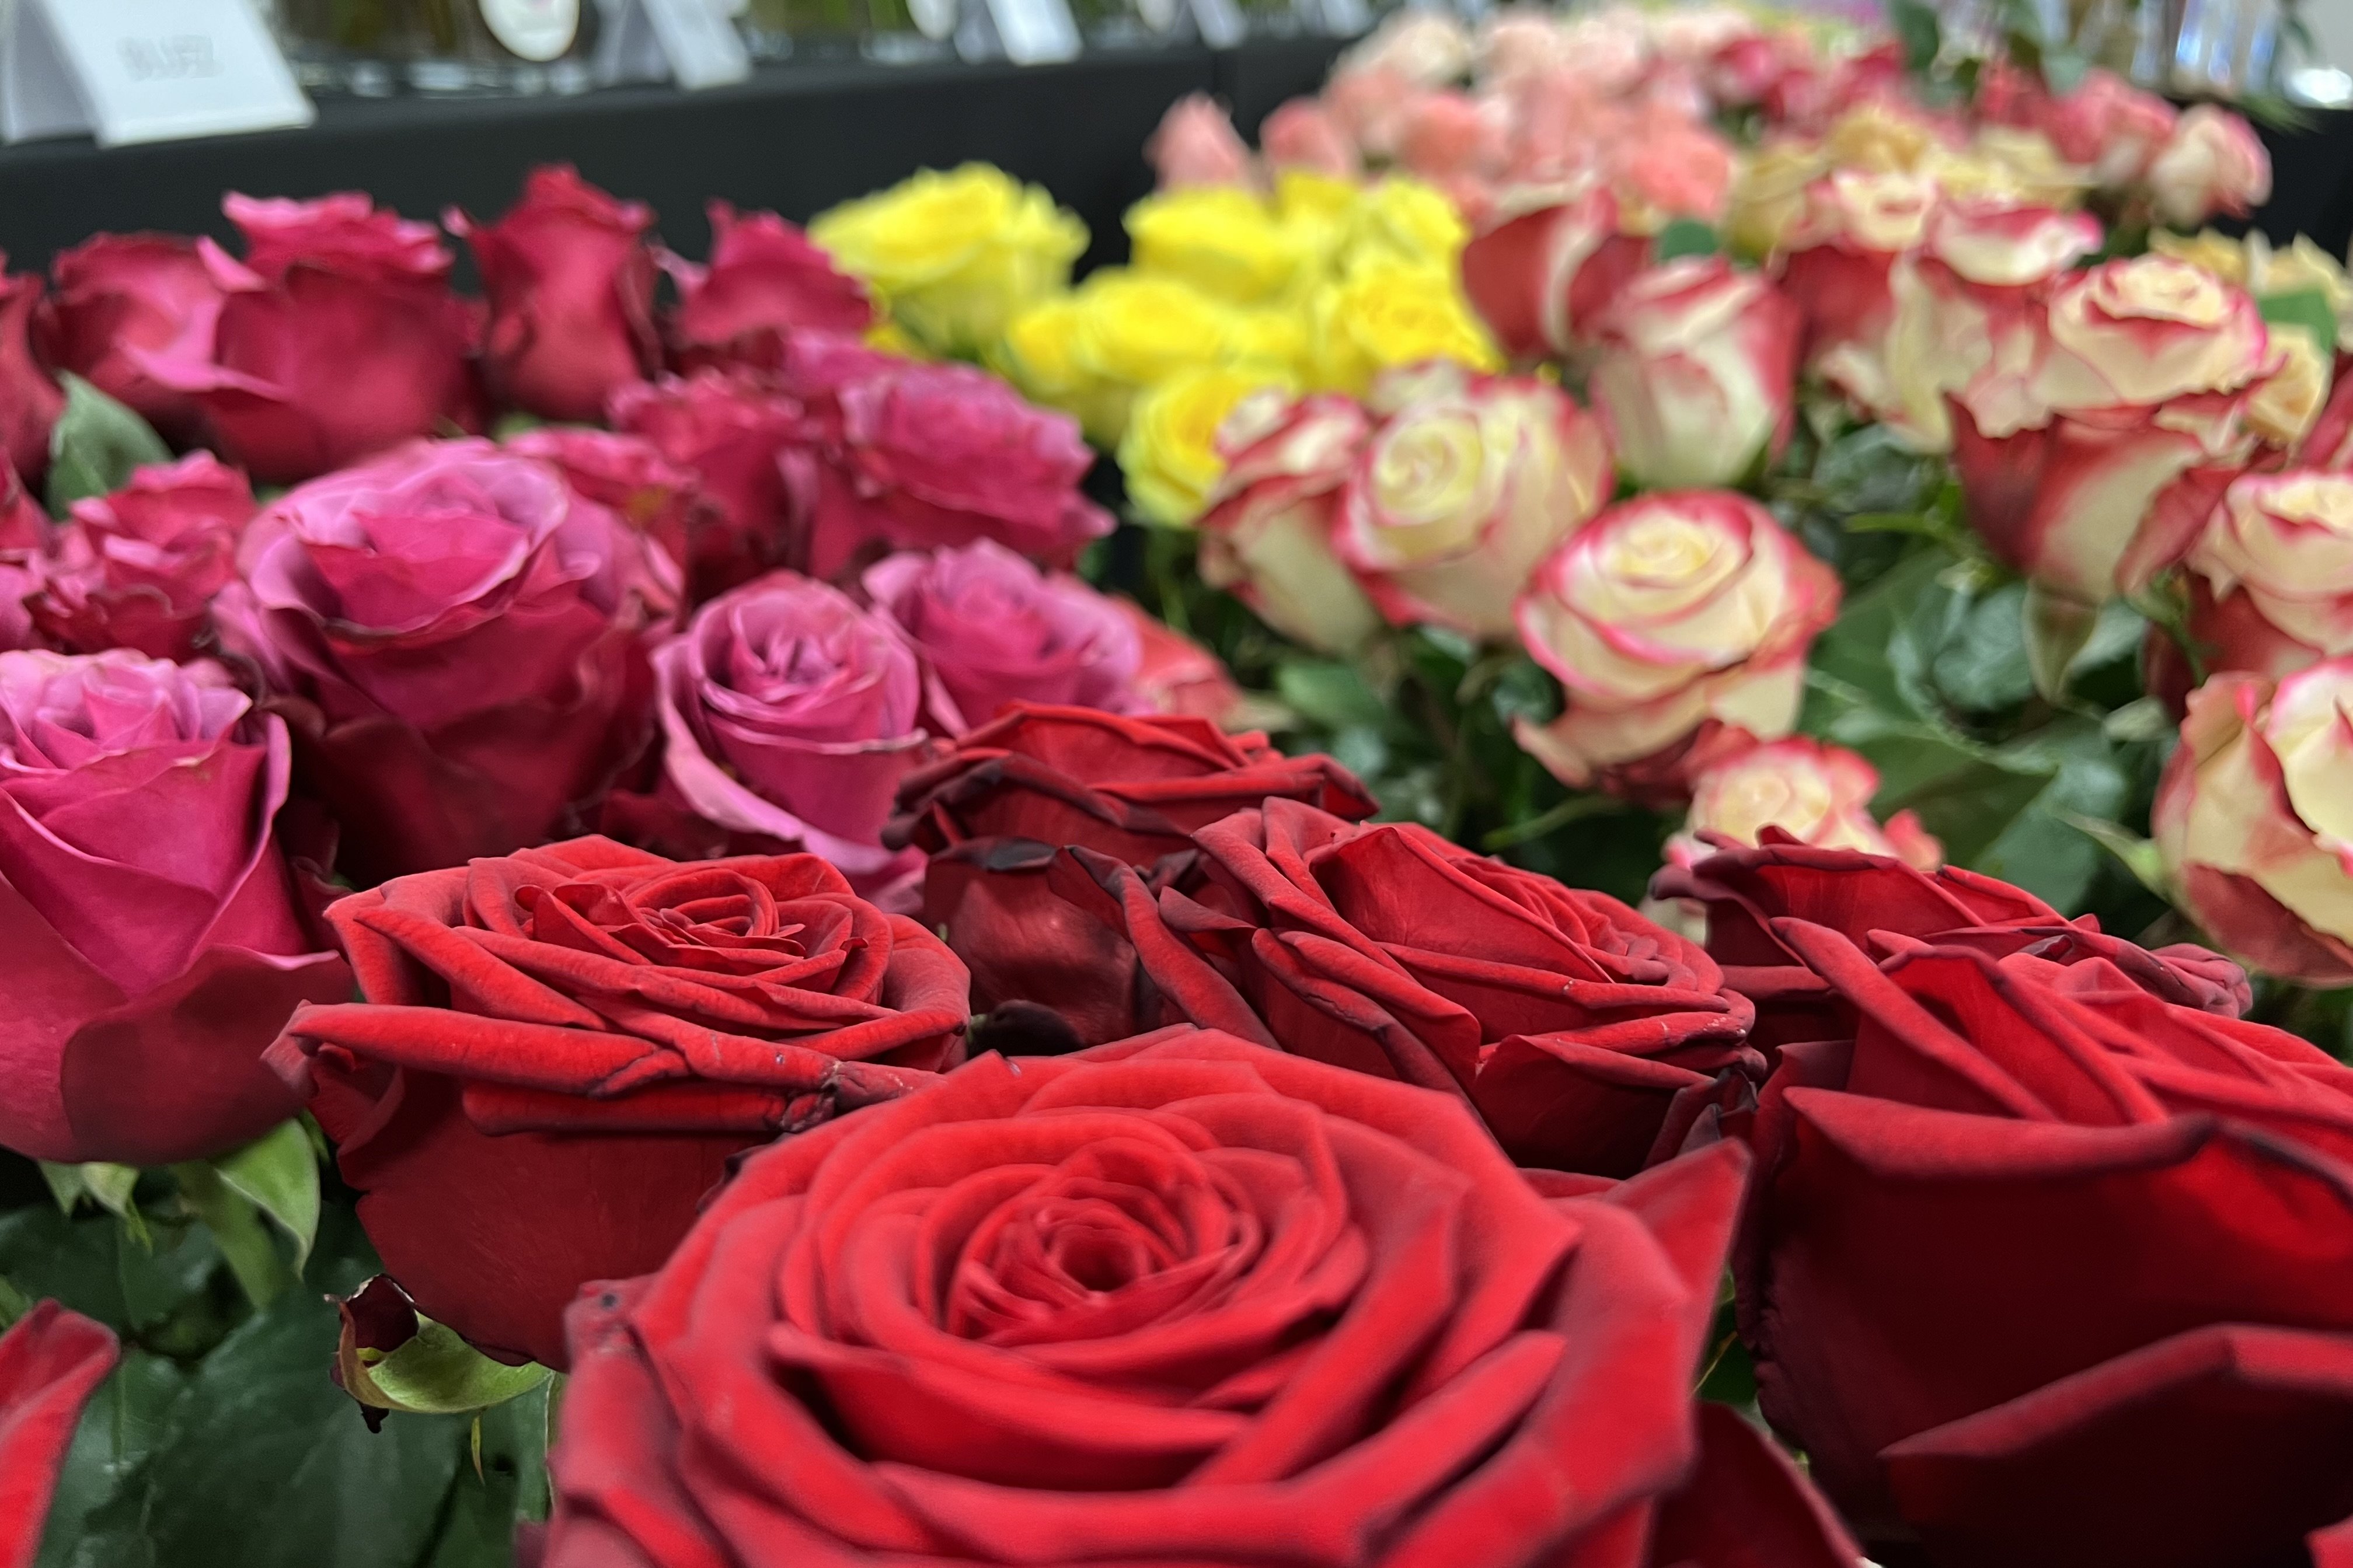 Precios de las rosas: ¿serán más caras este año por la inflación?